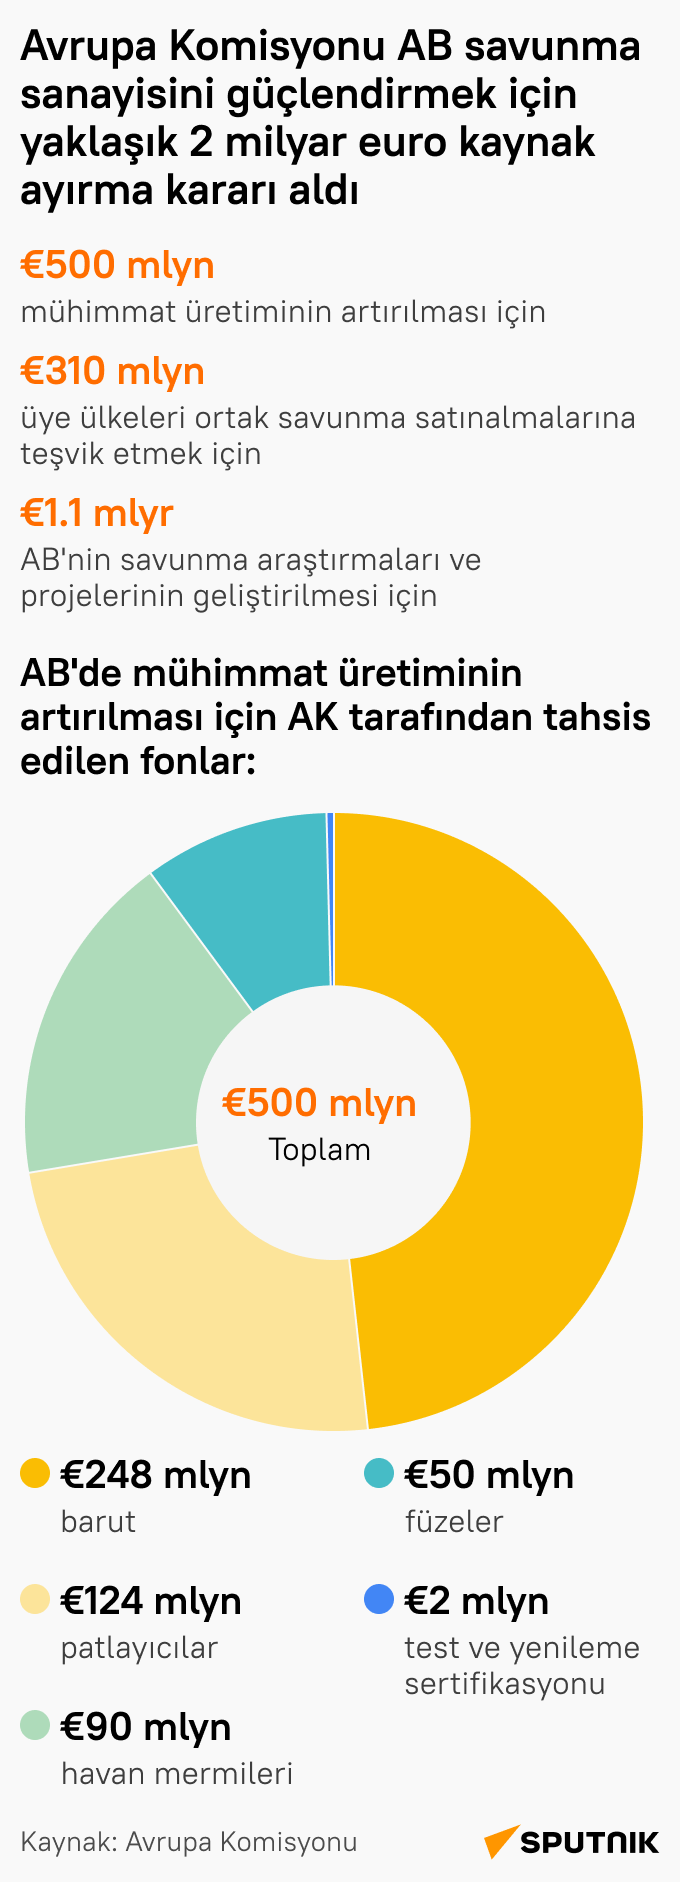 Avrupa Komisyonu'ndan AB savunma sanayisi için 2 milyar euroluk destek  - Sputnik Türkiye